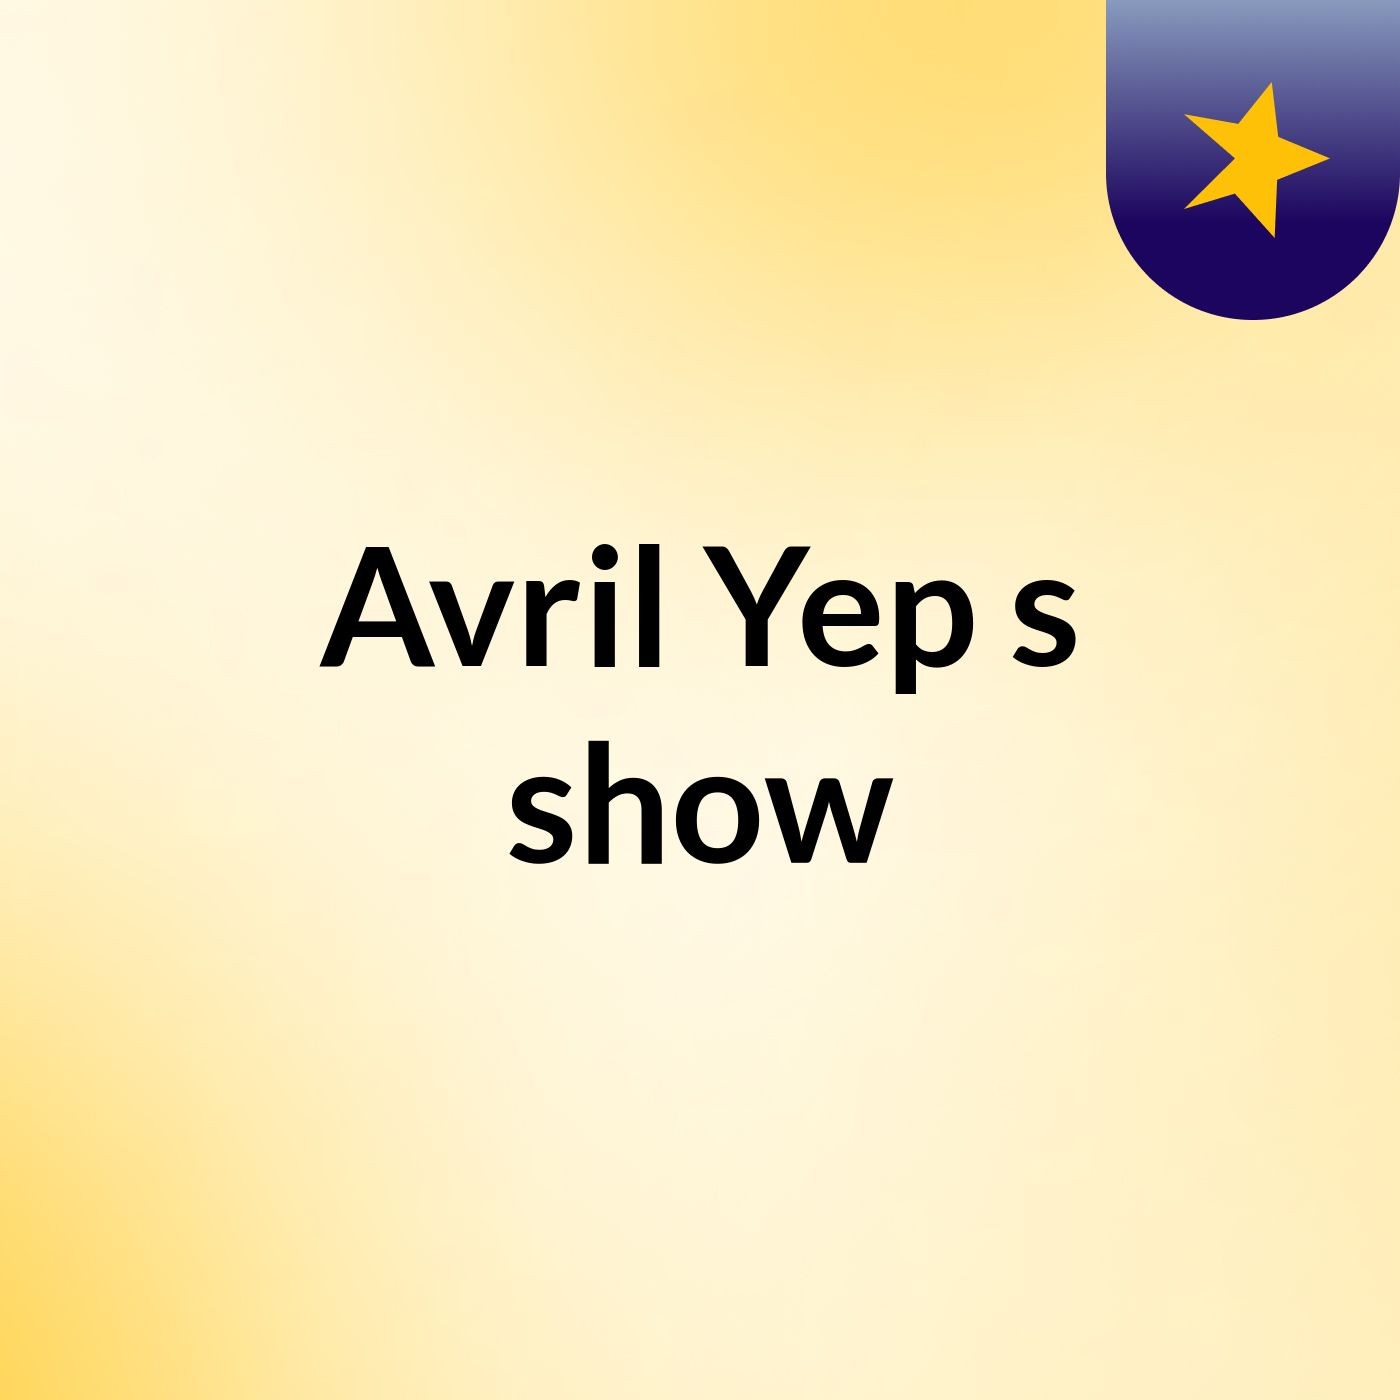 Avril Yep's show